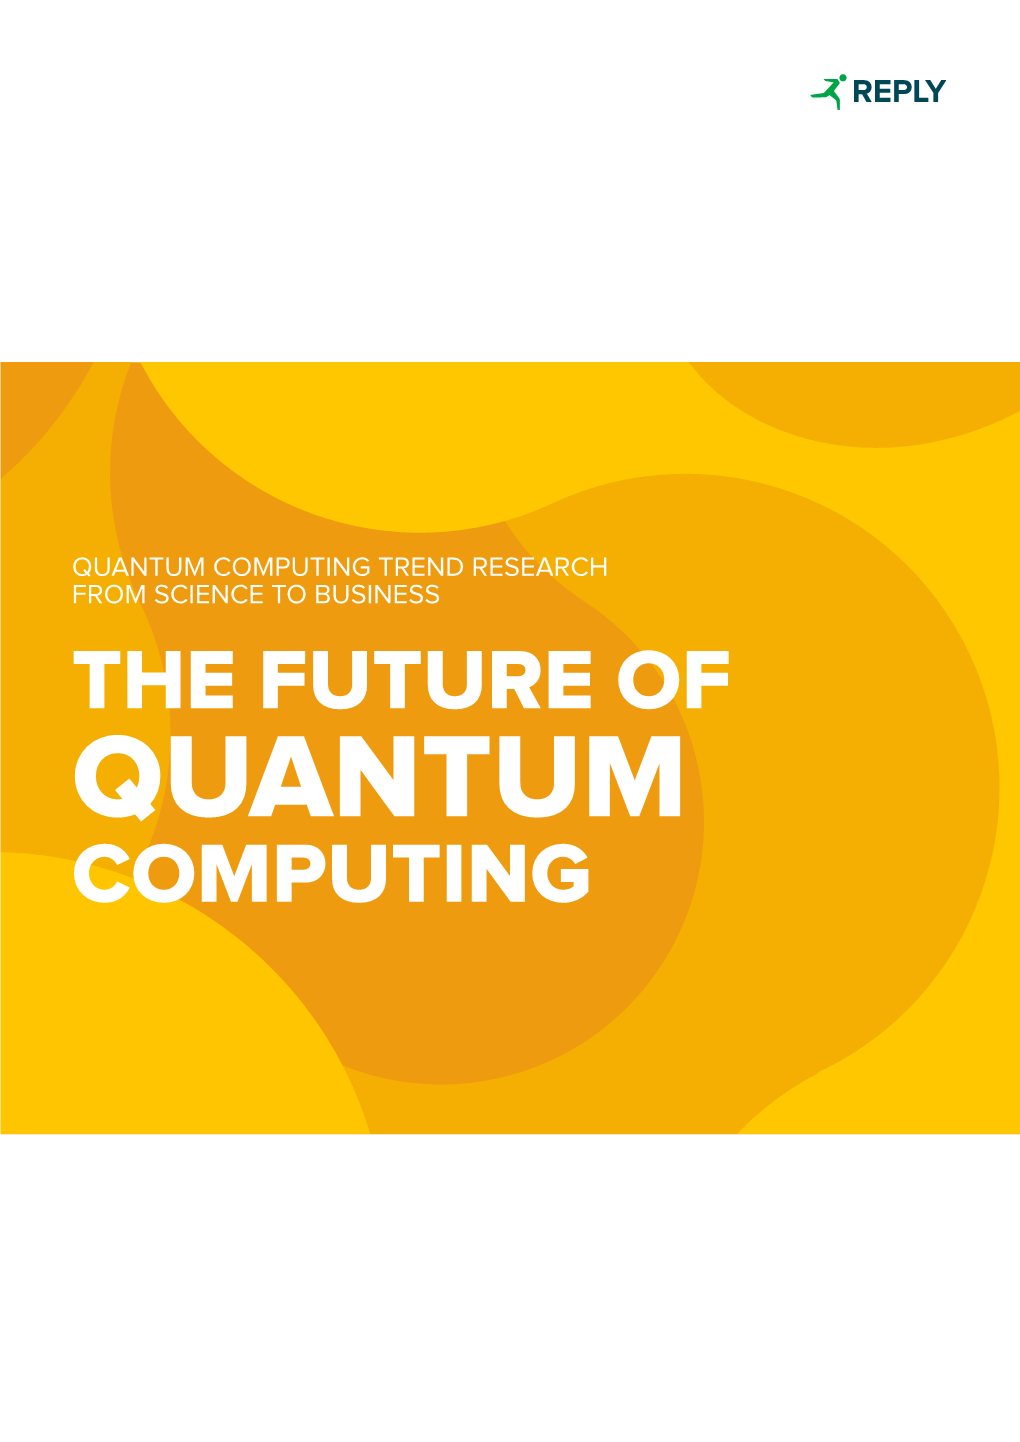 The Future of Quantum Computing the Future of Quantum Computing